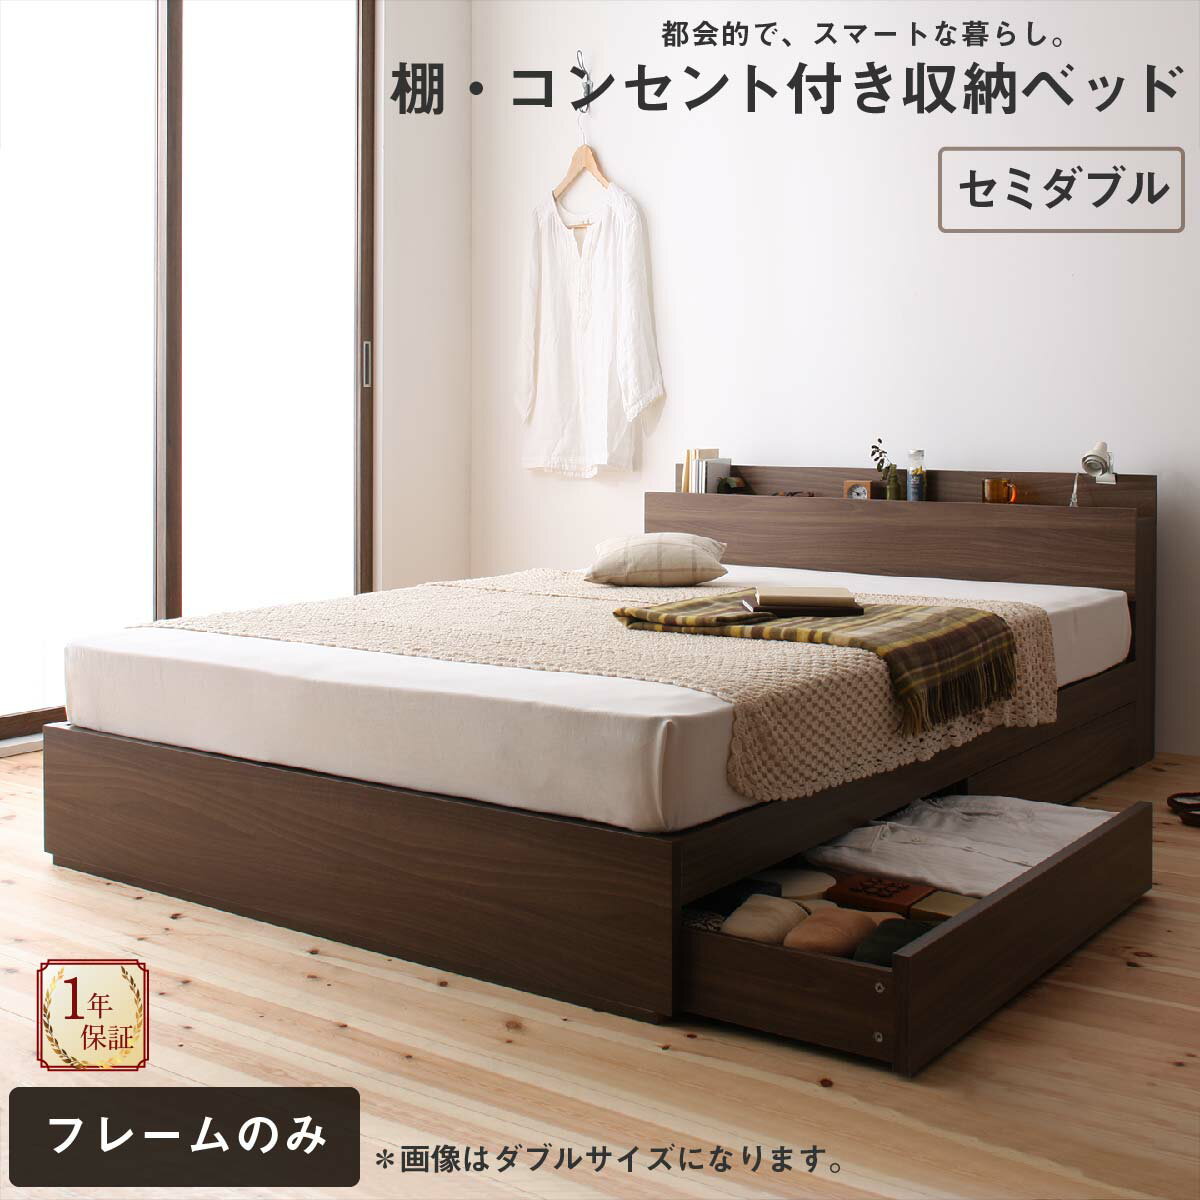 ロングセラー 人気 ベッド ベッドフレーム 収納付き 木製ベッド コンセント付き 収納ベッド 引き出し付きベッド ウォルナットブラウン ベッドフレームのみ セミダブル【ts】